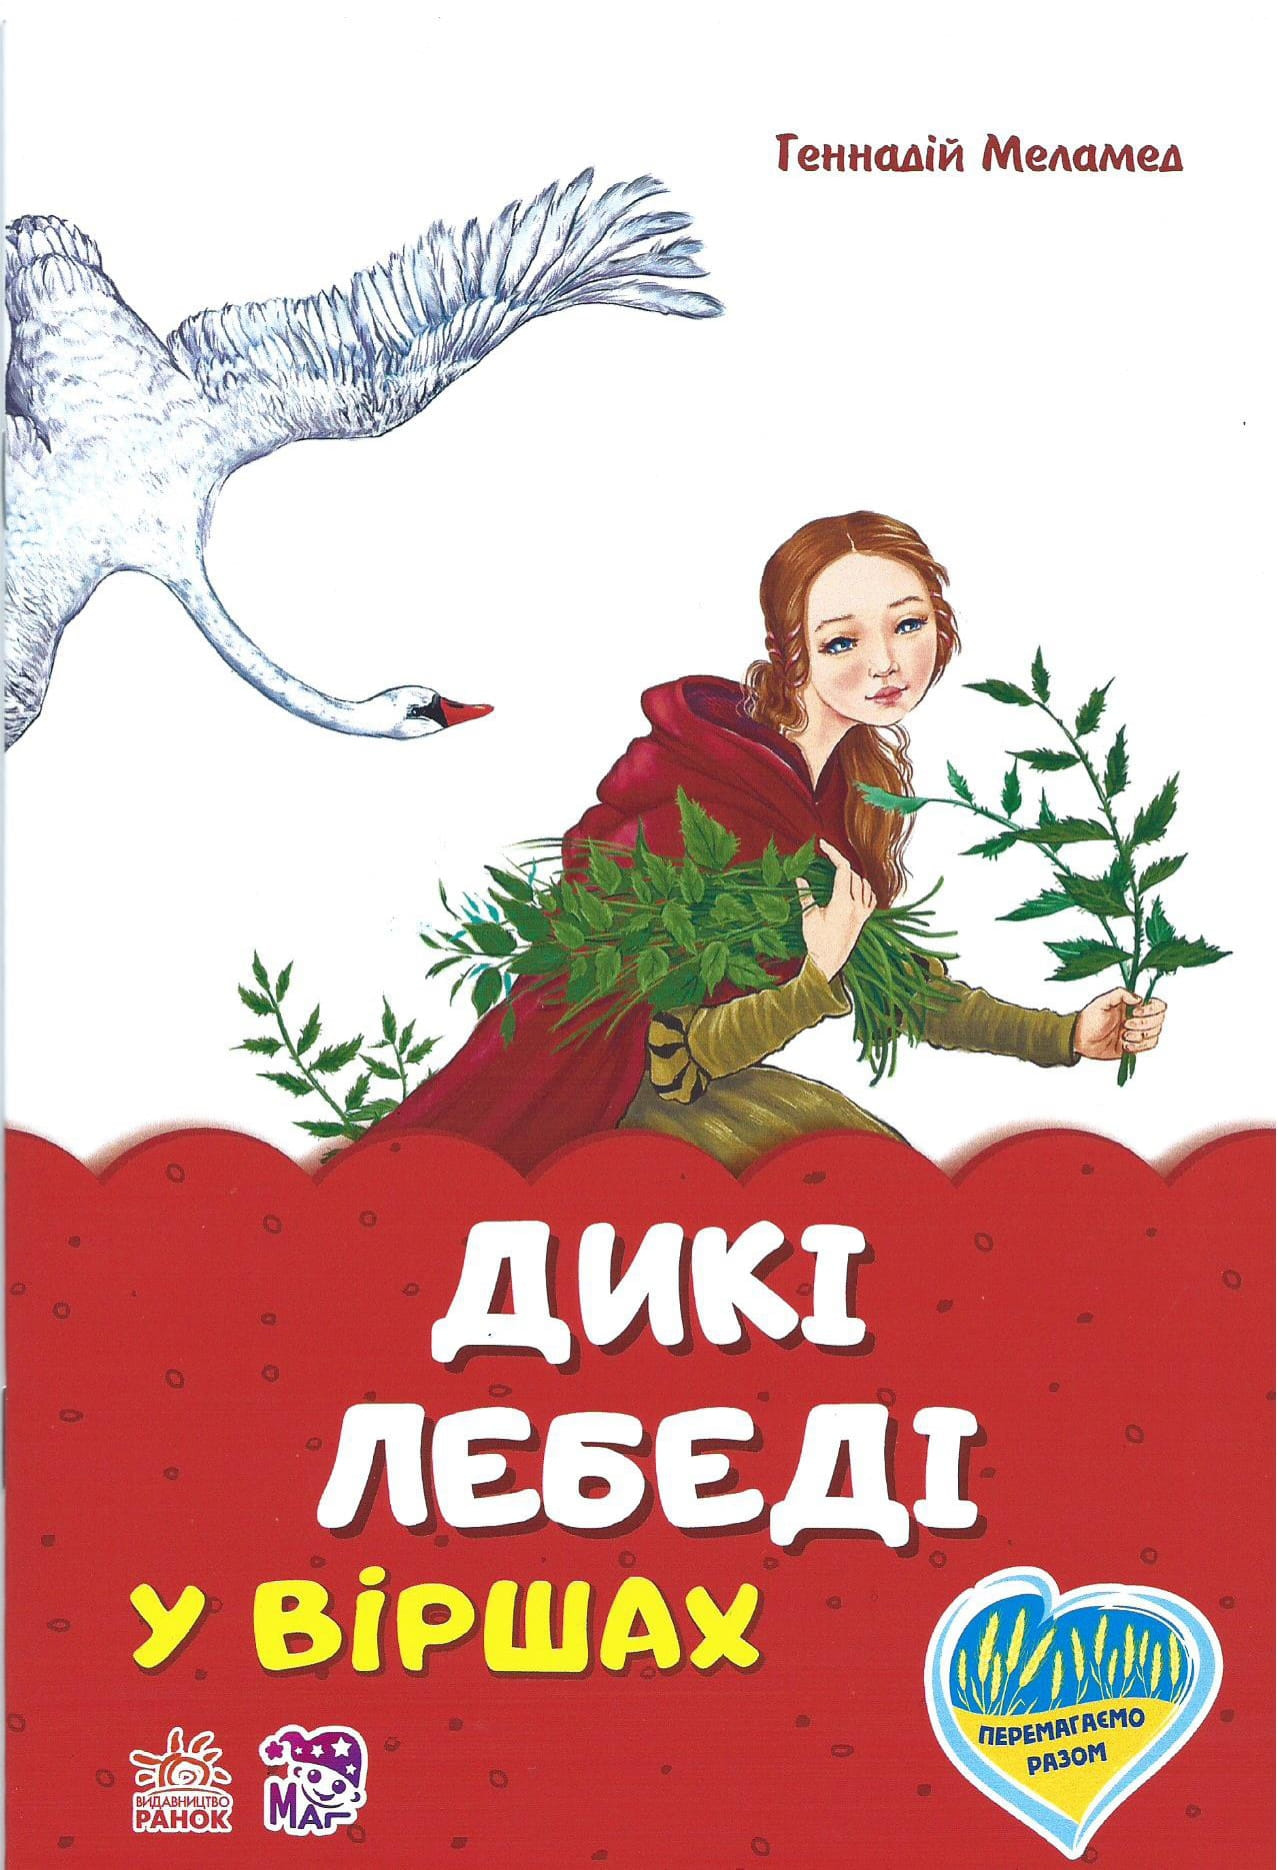 okładka bajki w języku ukraińskim (4)